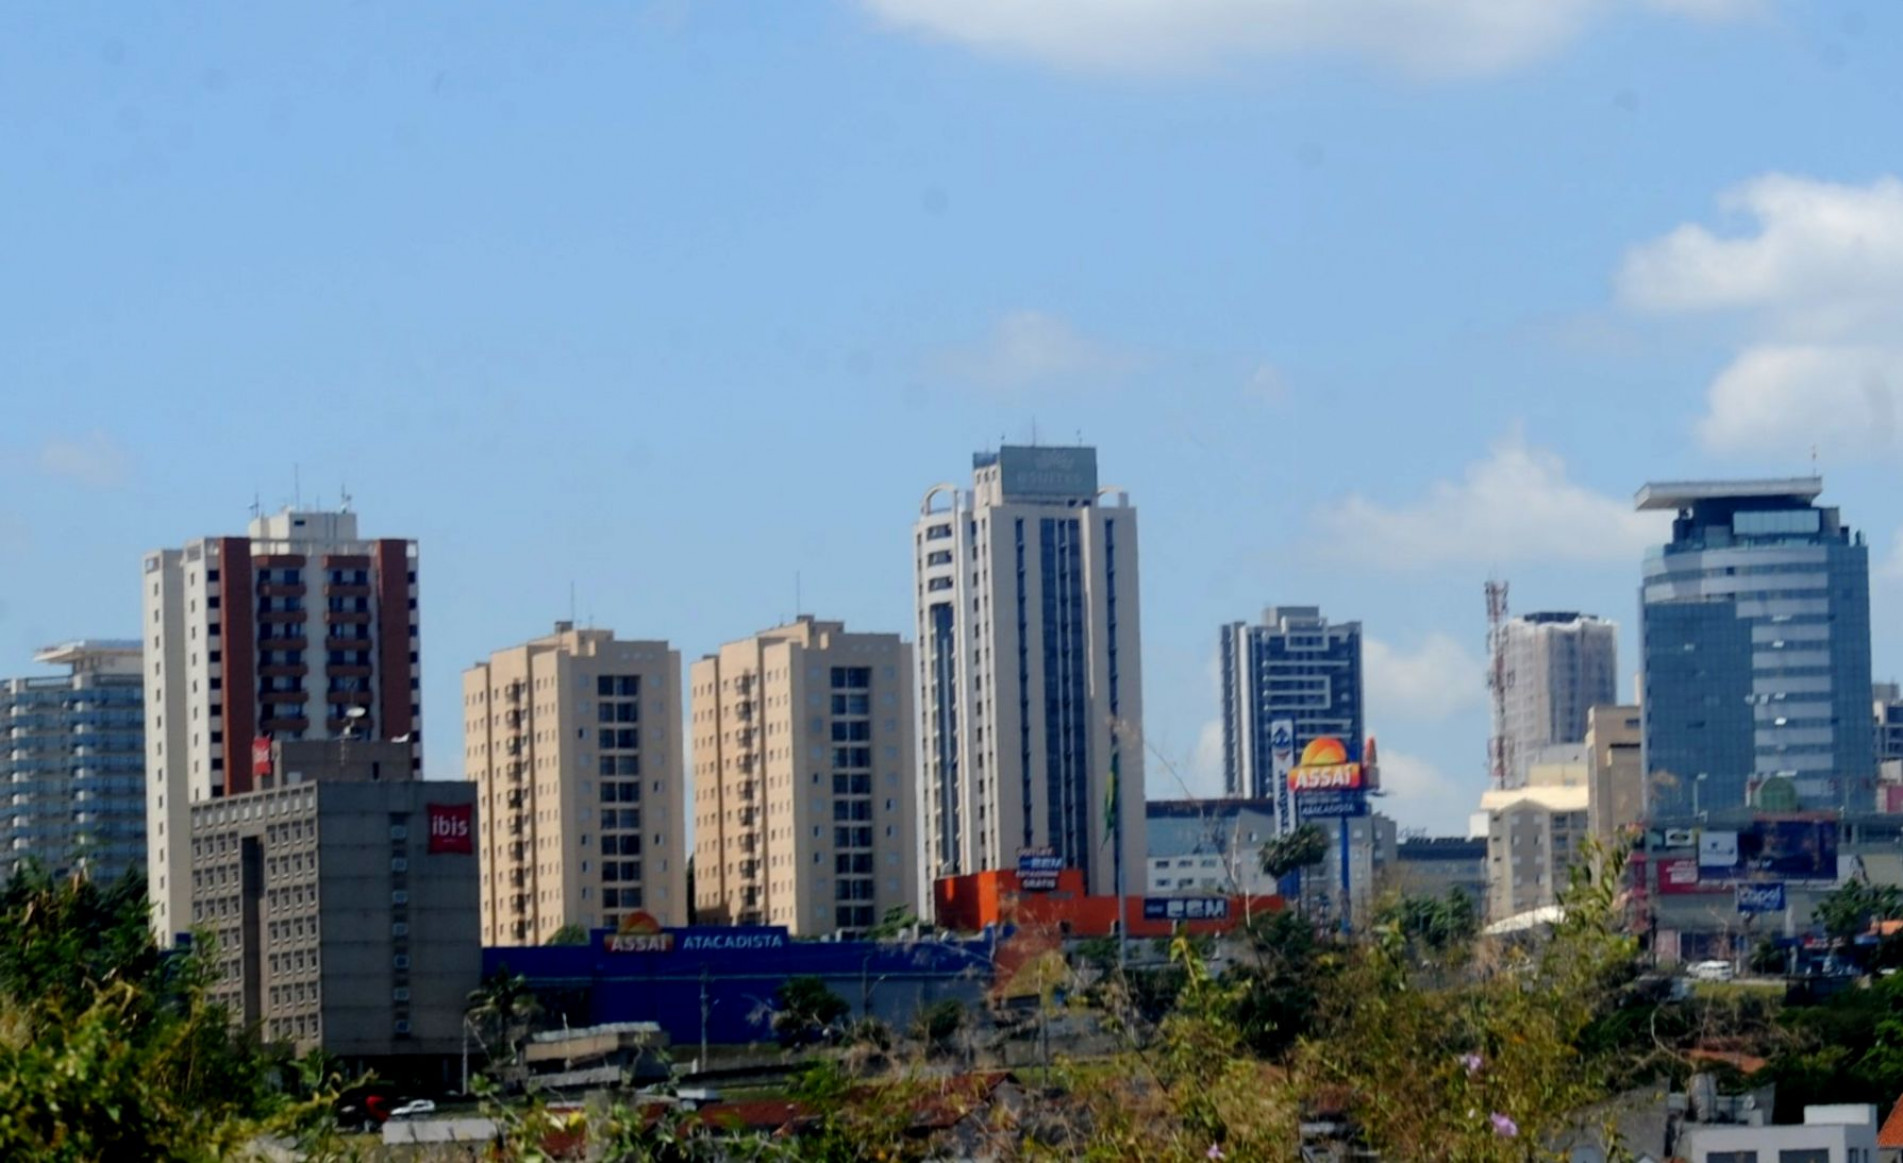 Sede da Região Metropolitana, Sorocaba tem destaque no segmento industrial, com 2,2% de participação no PIB estadual